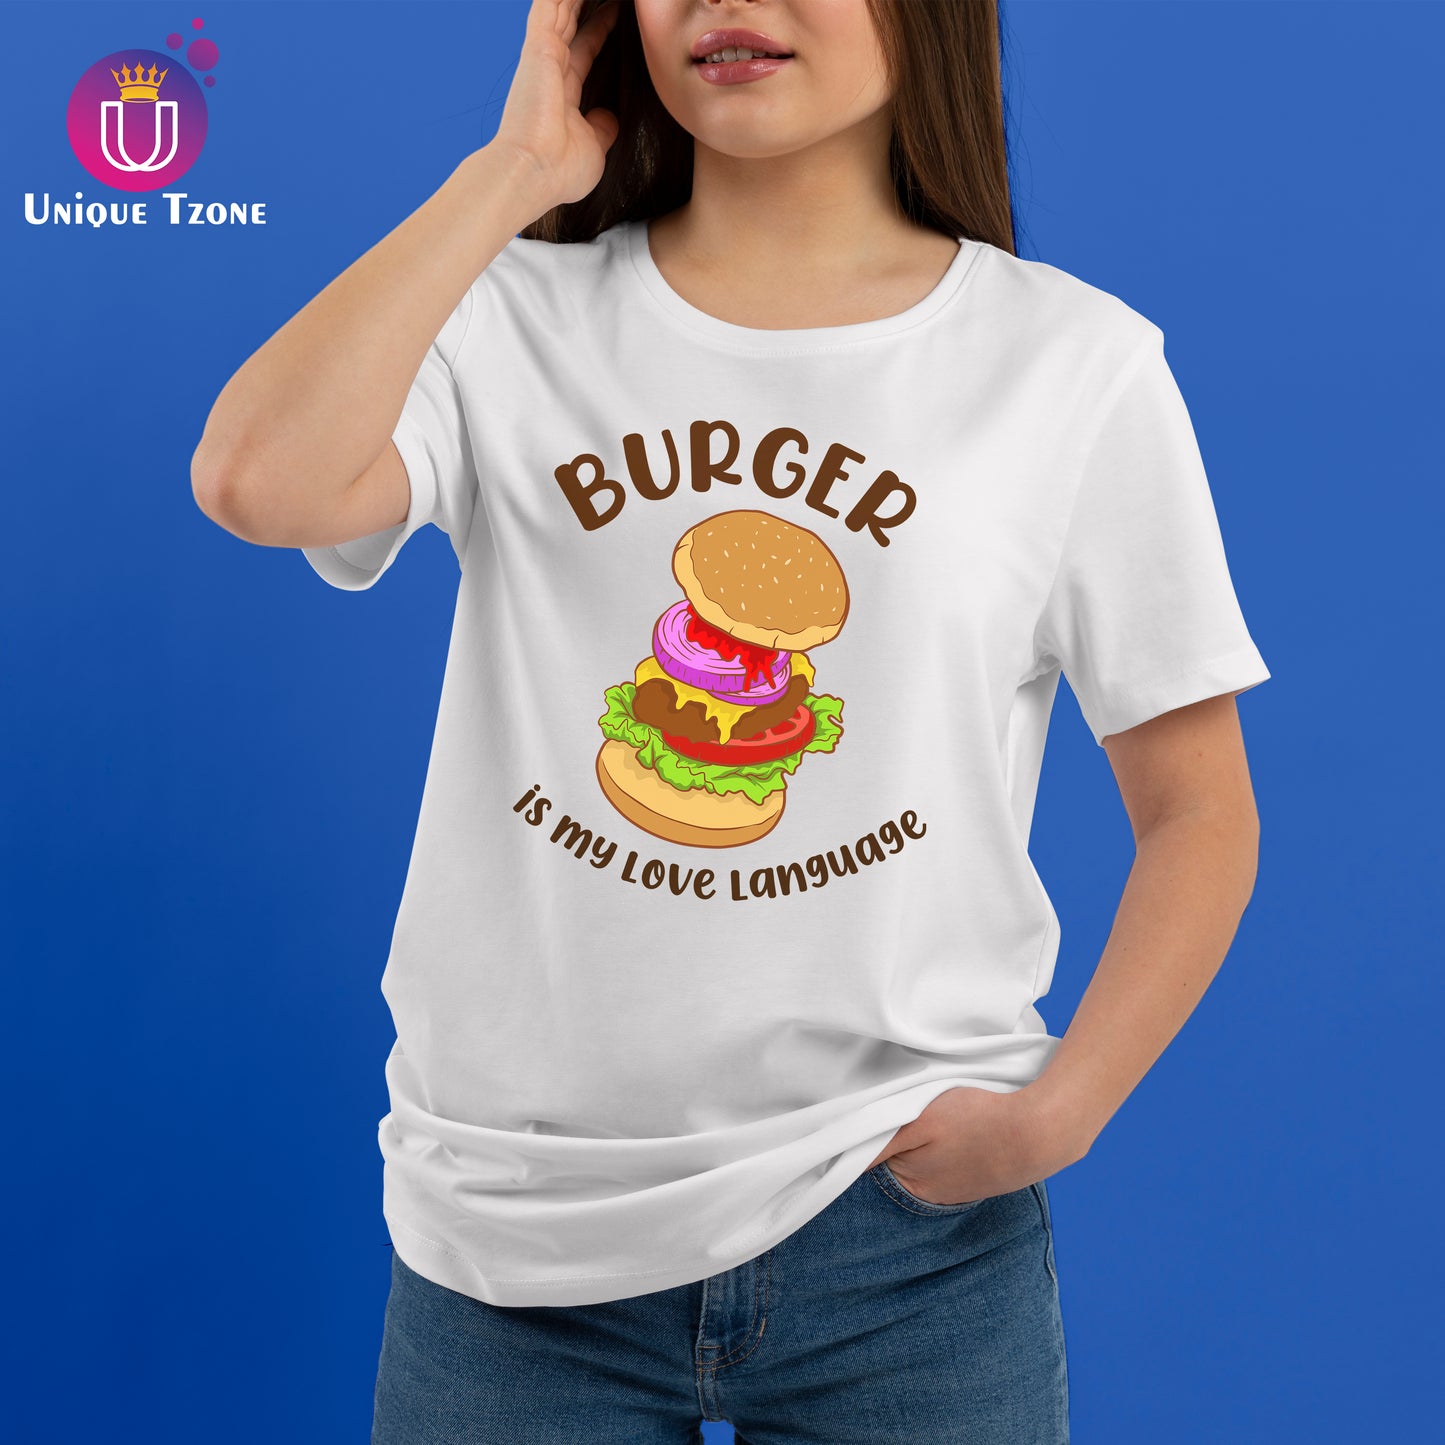 Burger Is My Love Language White Round Neck Half Cotton T-shirt